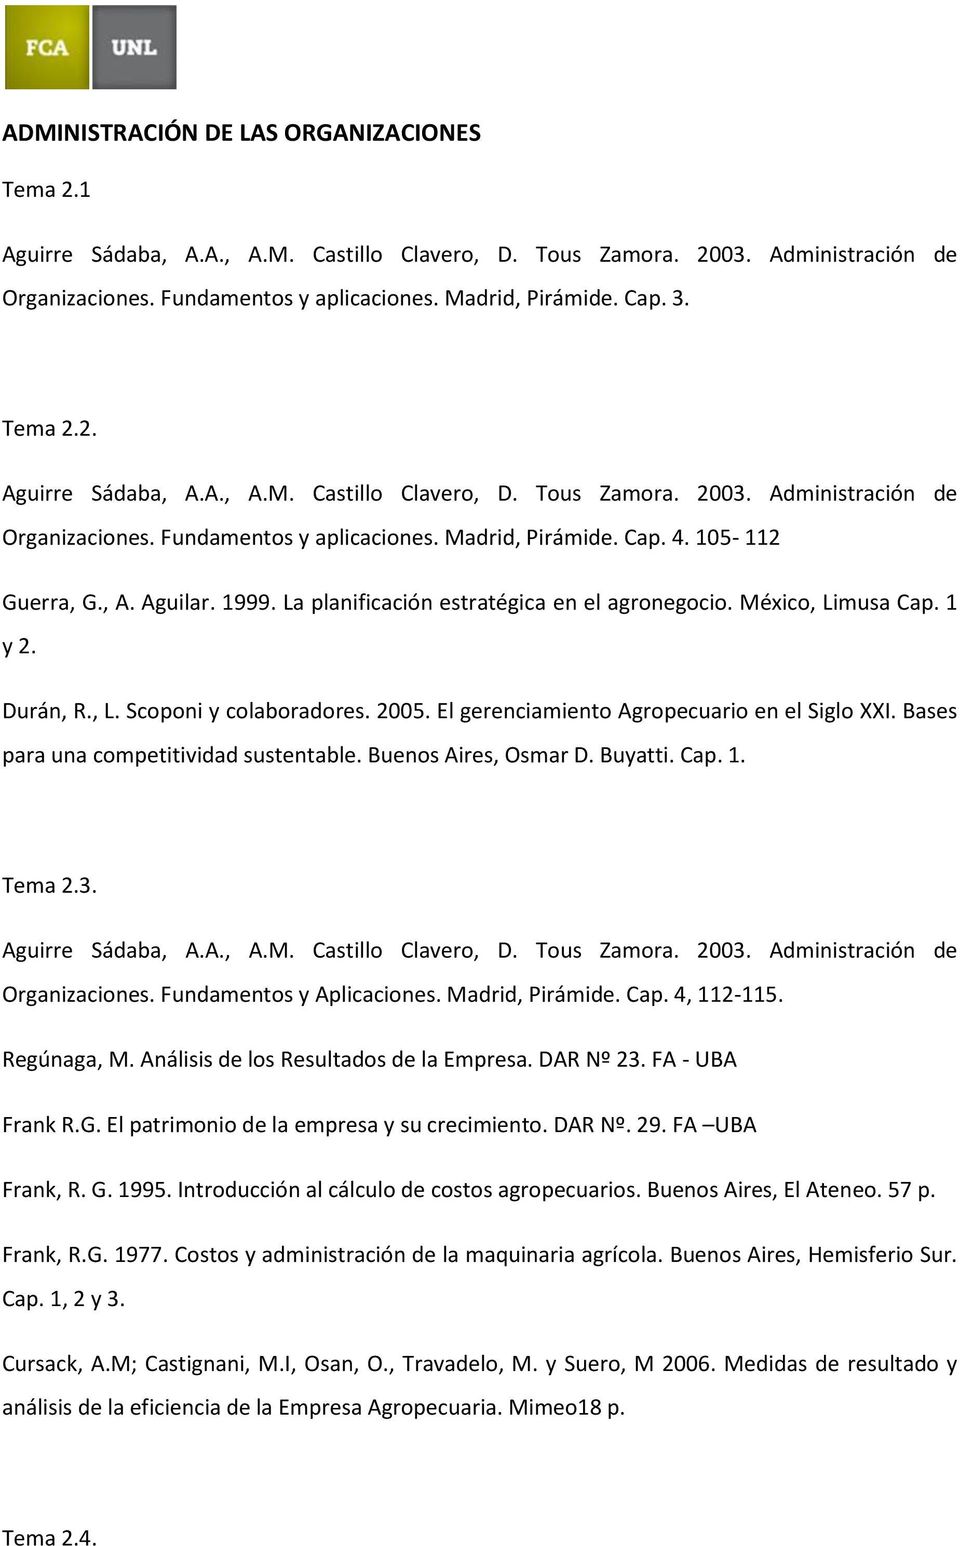 Bases para una competitividad sustentable. Buenos Aires, Osmar D. Buyatti. Cap. 1. Tema 2.3. Organizaciones. Fundamentos y Aplicaciones. Madrid, Pirámide. Cap. 4, 112-115. Regúnaga, M.